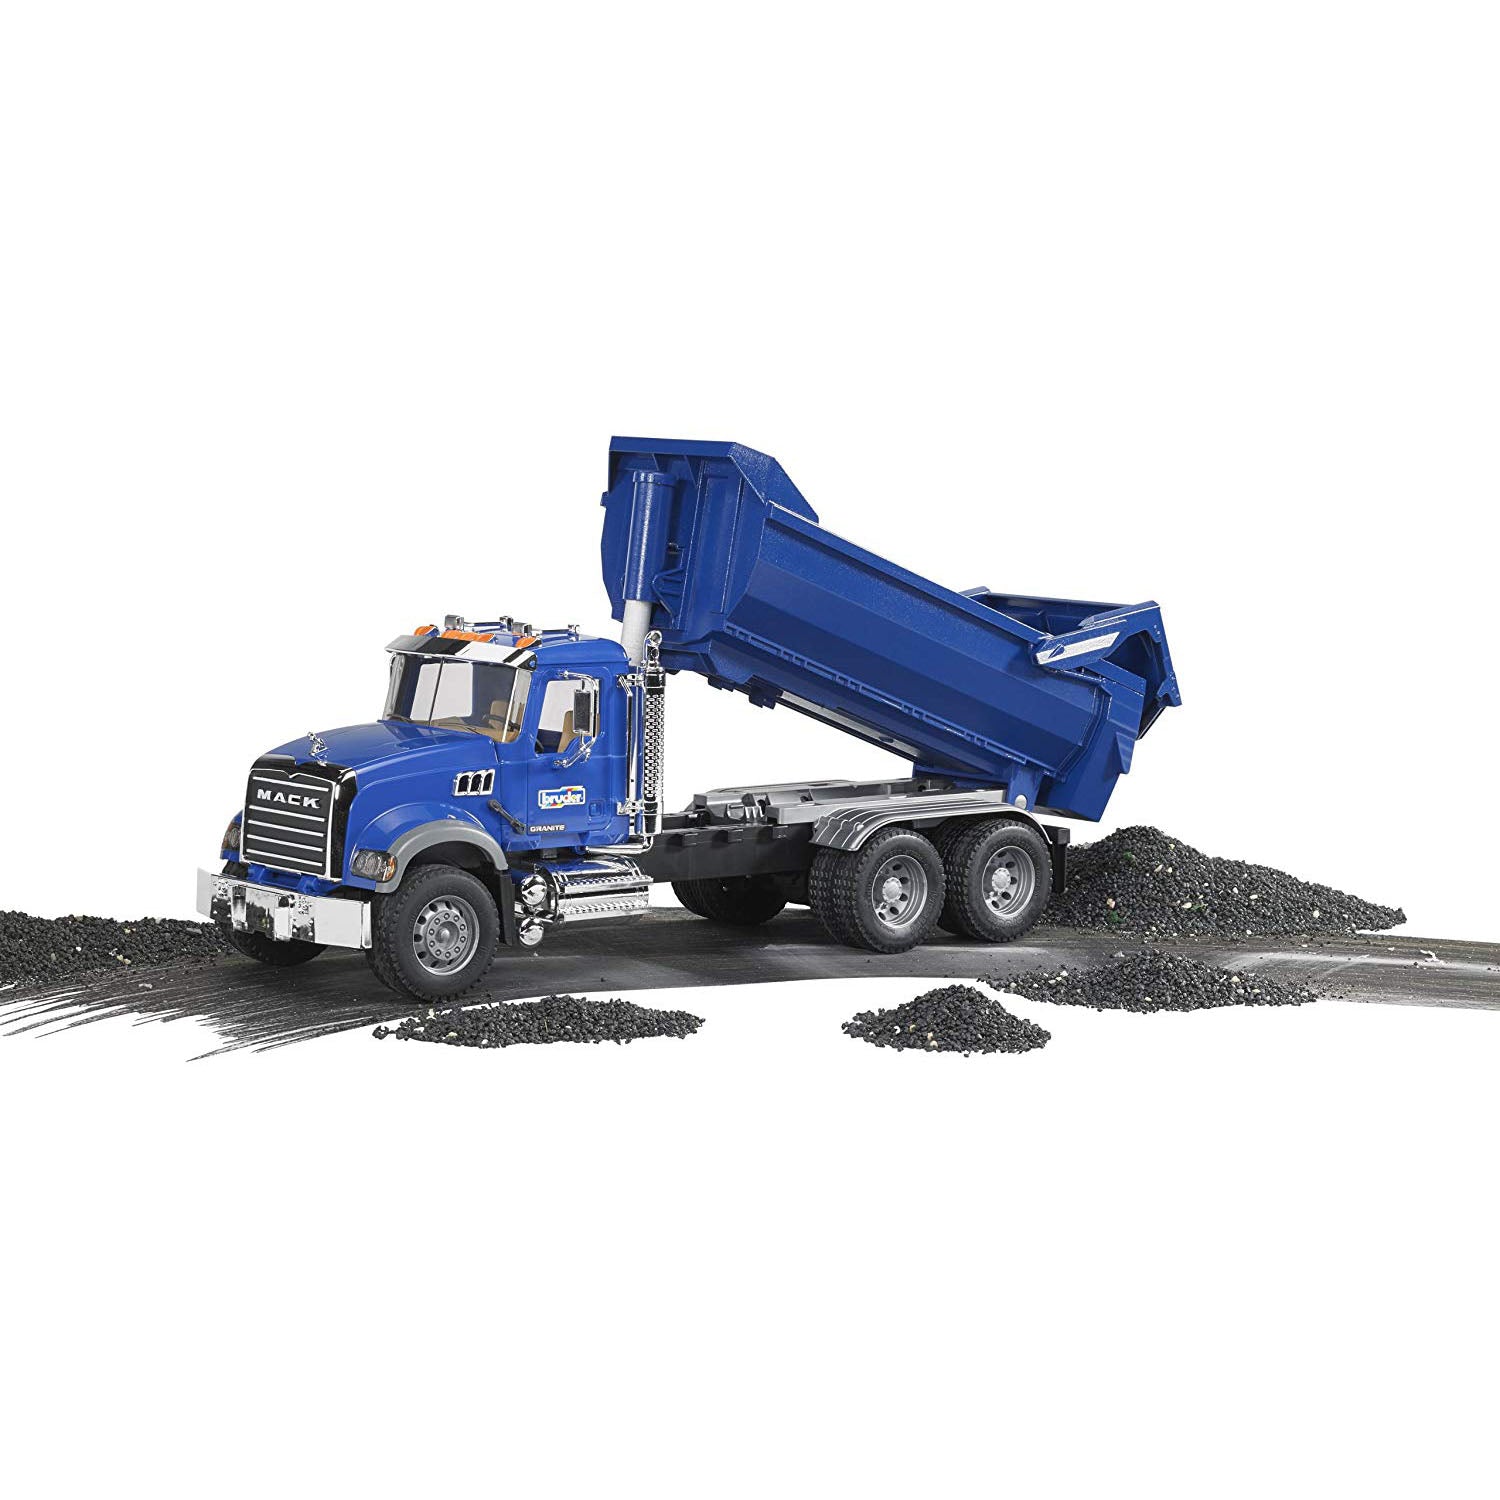  Bruder 02823 MACK Granite Halfpipe Dump Truck : Toys & Games